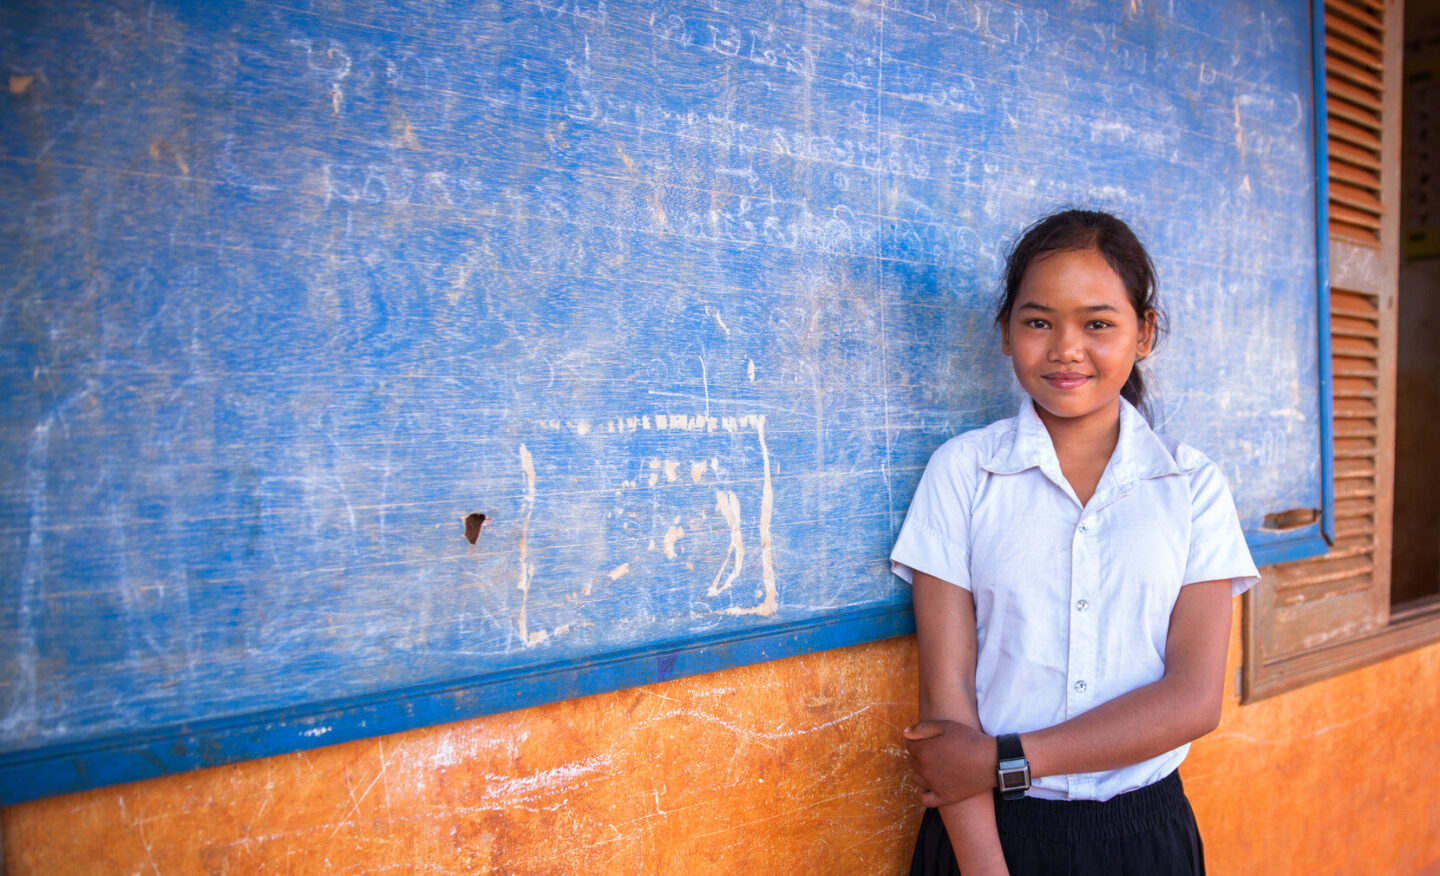 L’association humanitaire CARE lutte contre la pauvreté et les inégalités au Cambodge